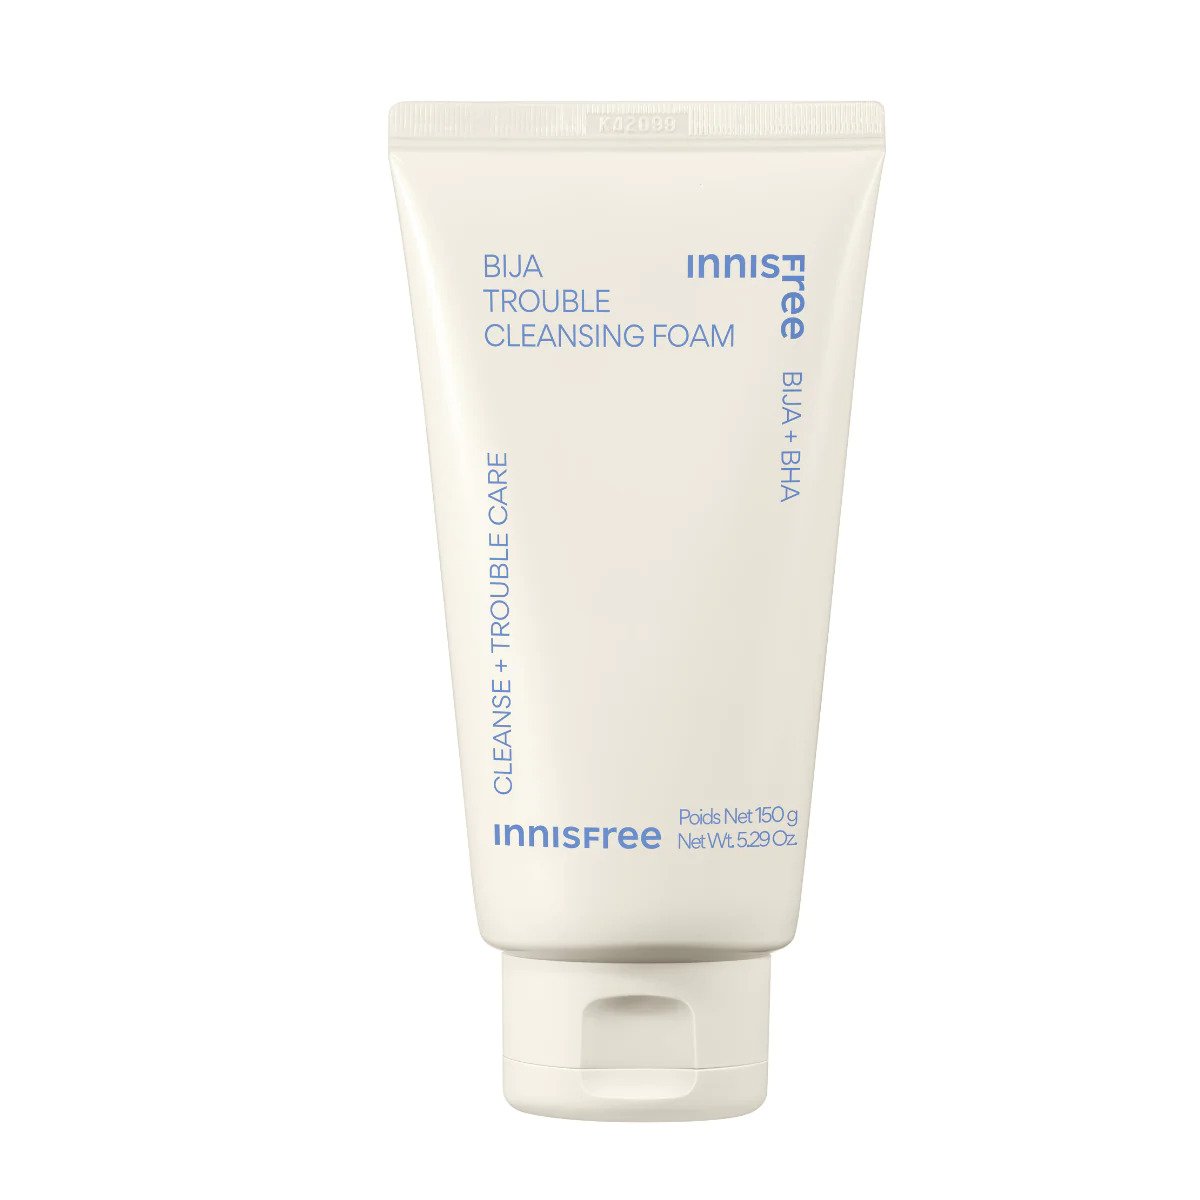 Innisfree Bija Trouble Cleansing Foam K-Beauty Korean Skincare UK